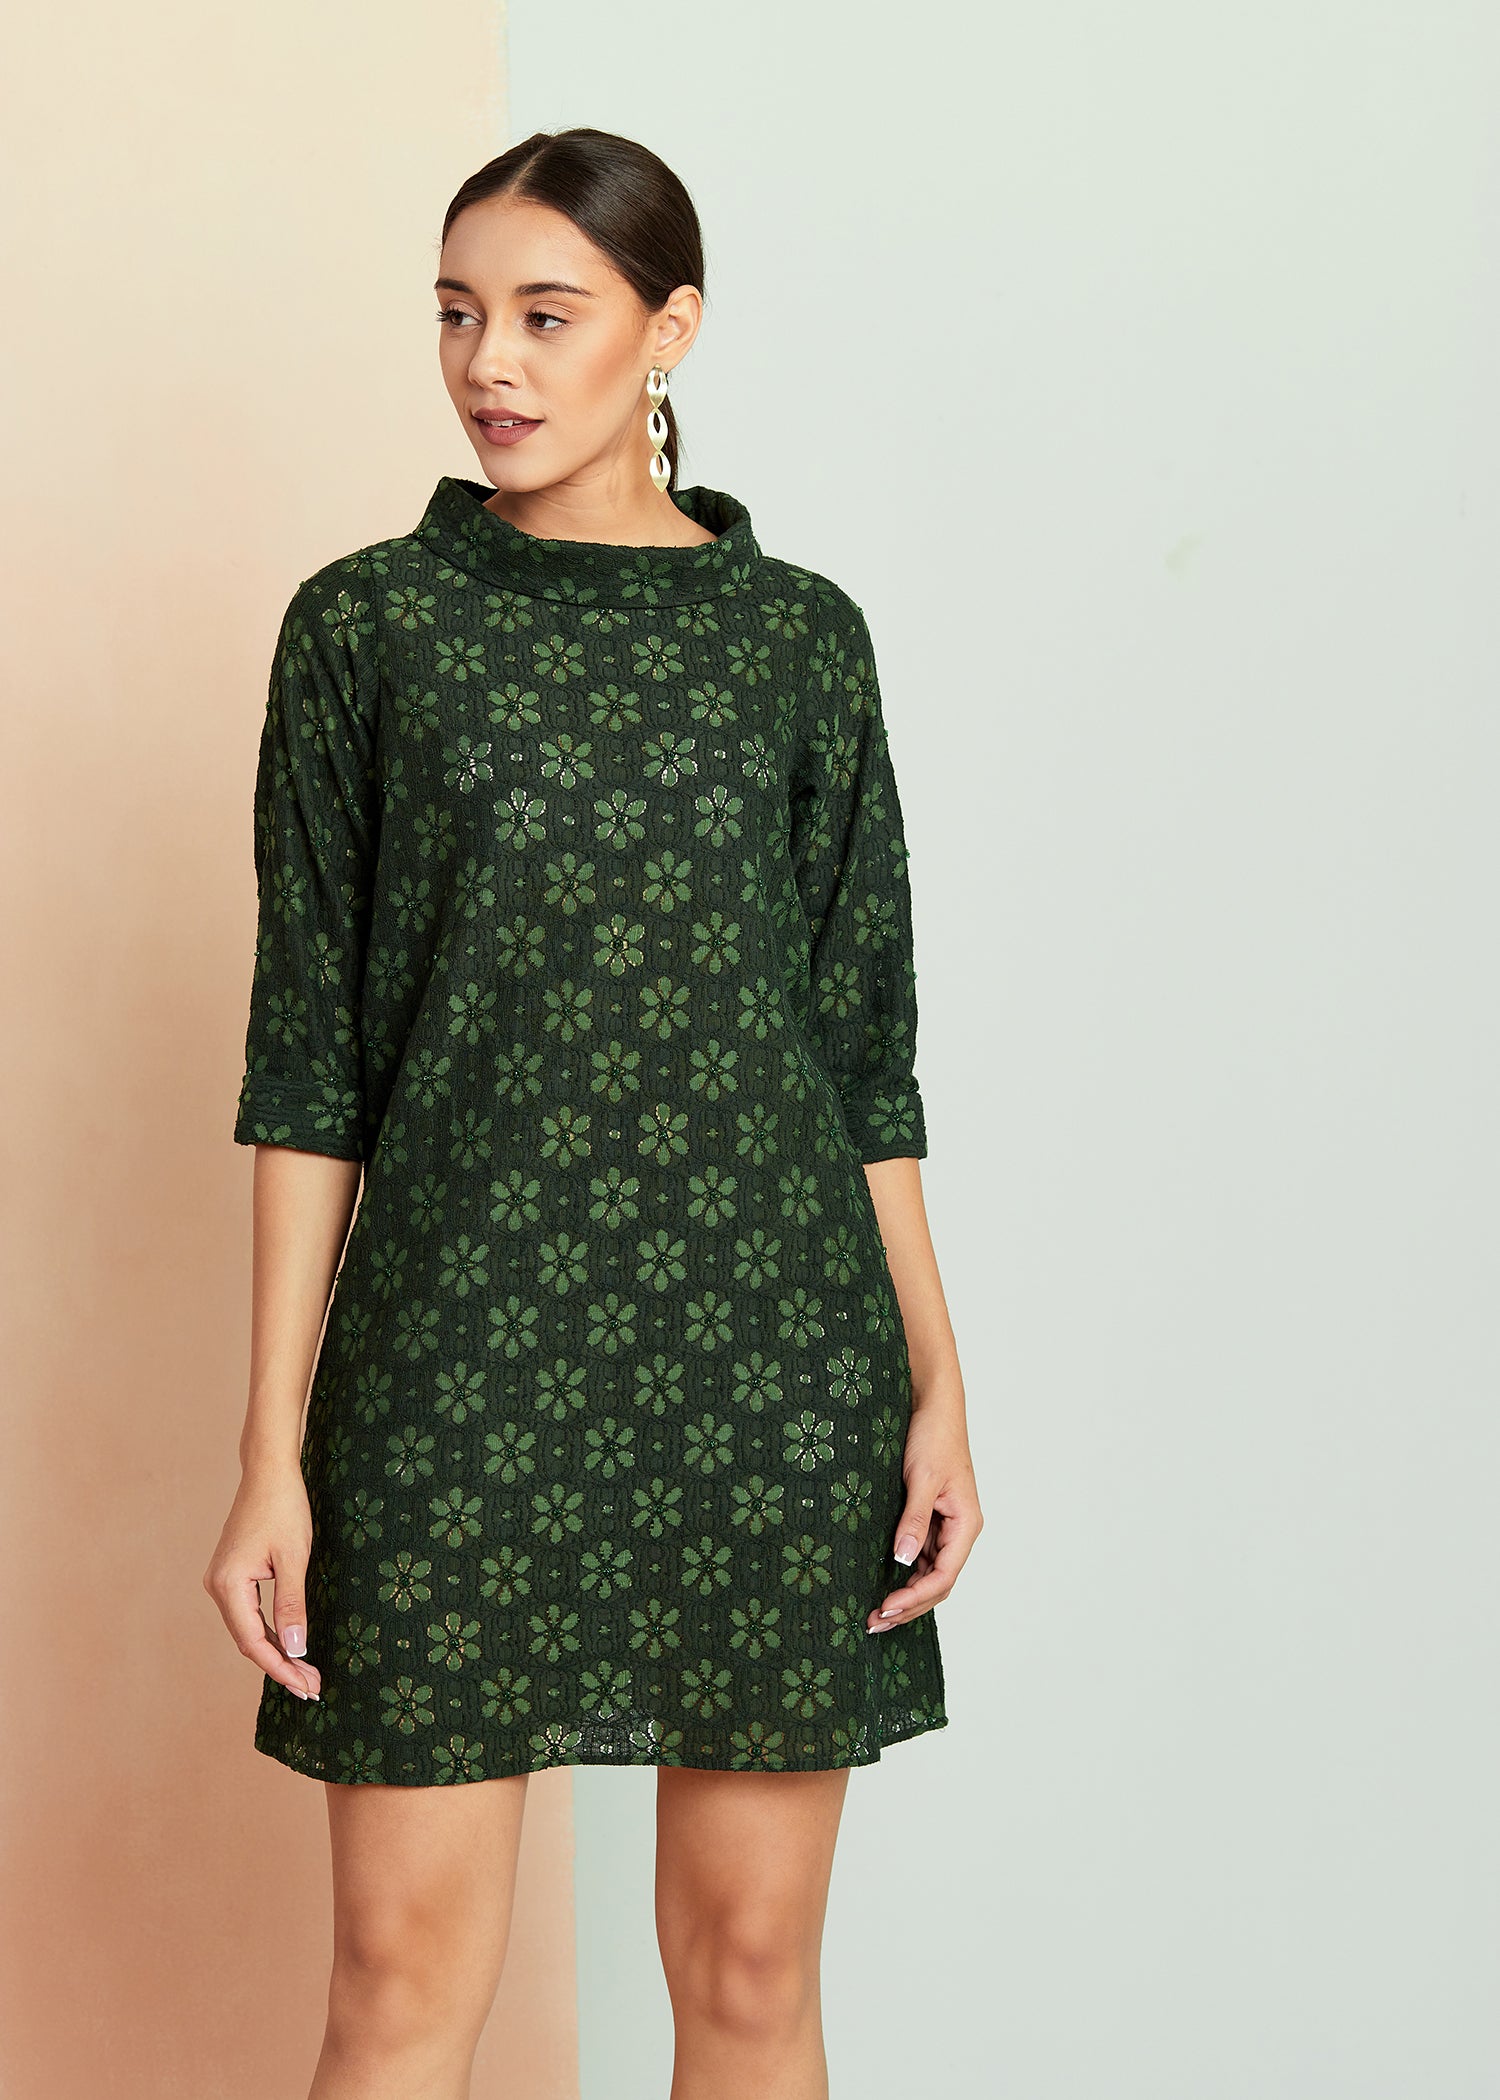 Emerald Green Schiffli Dress